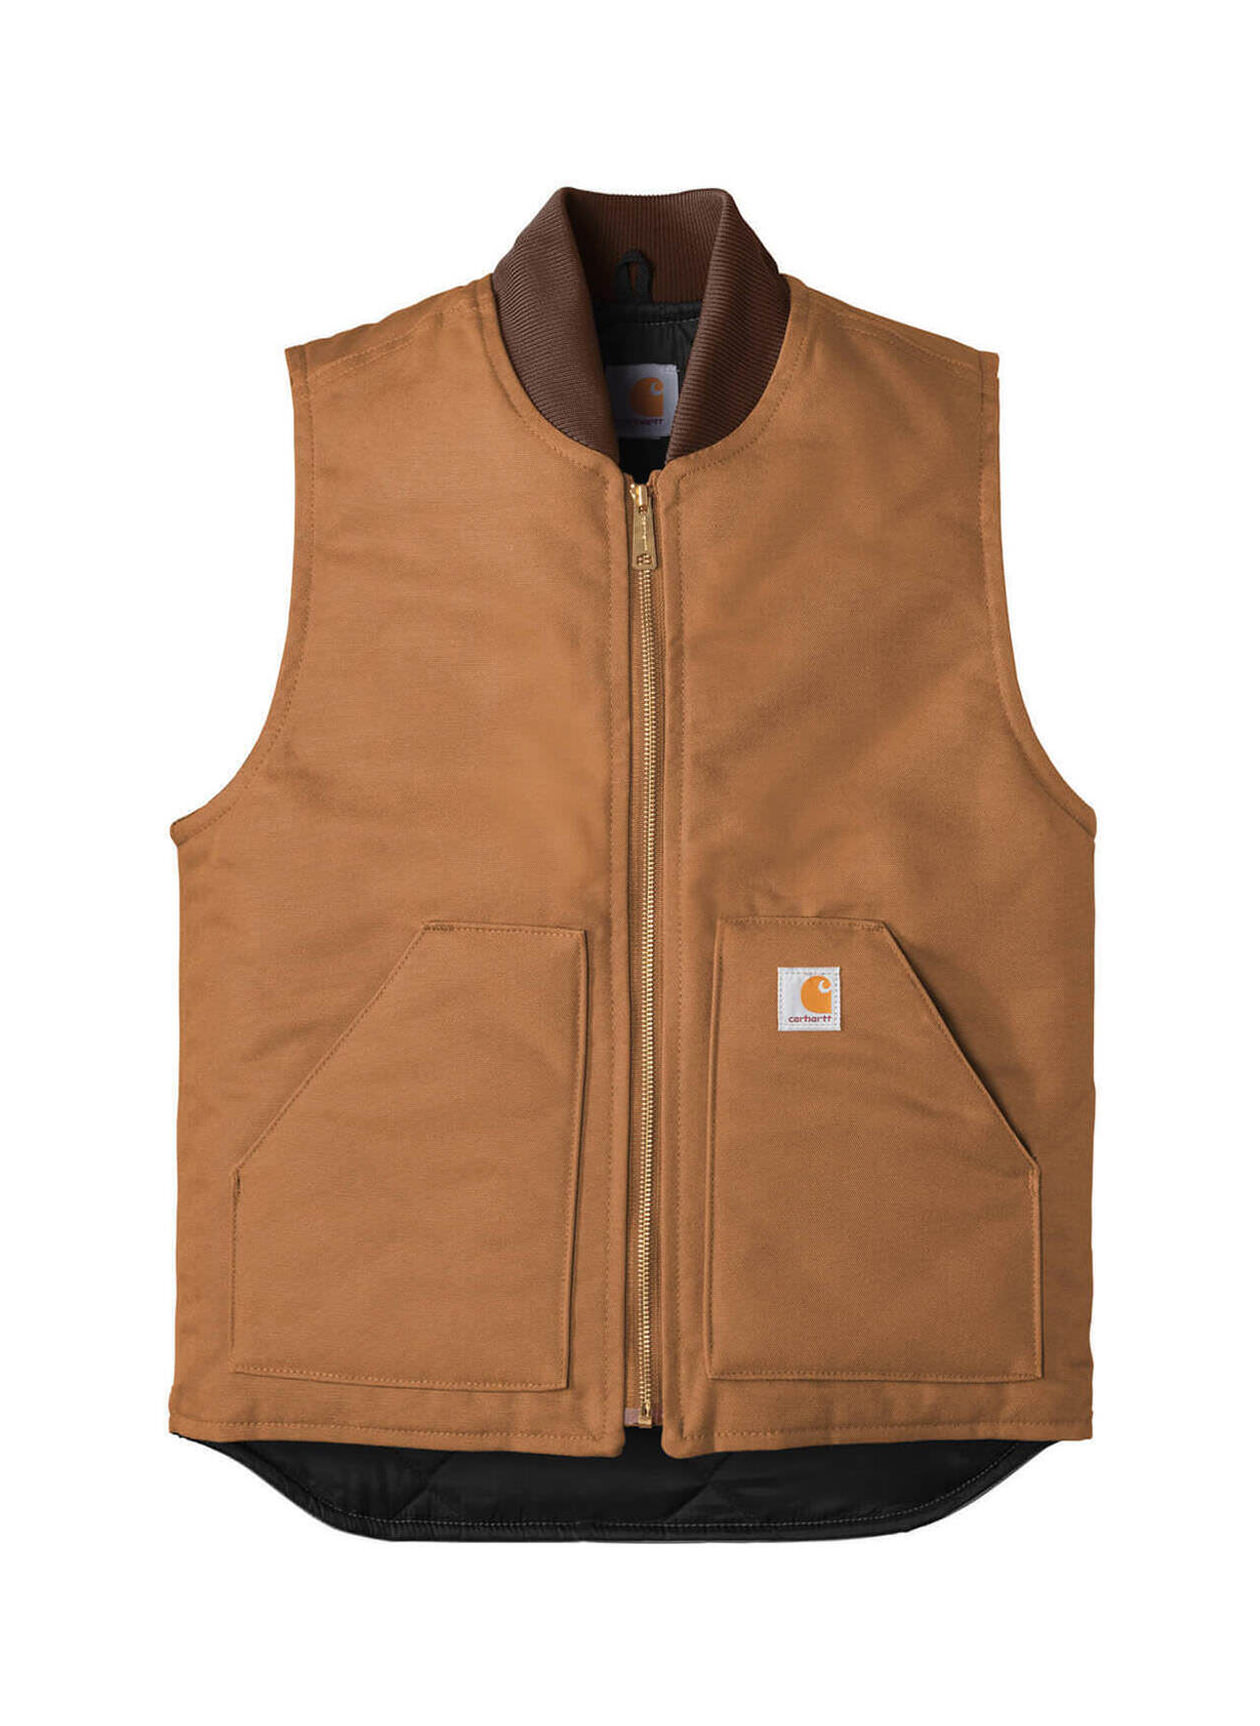 Carhartt Men's Brown Duck Vest